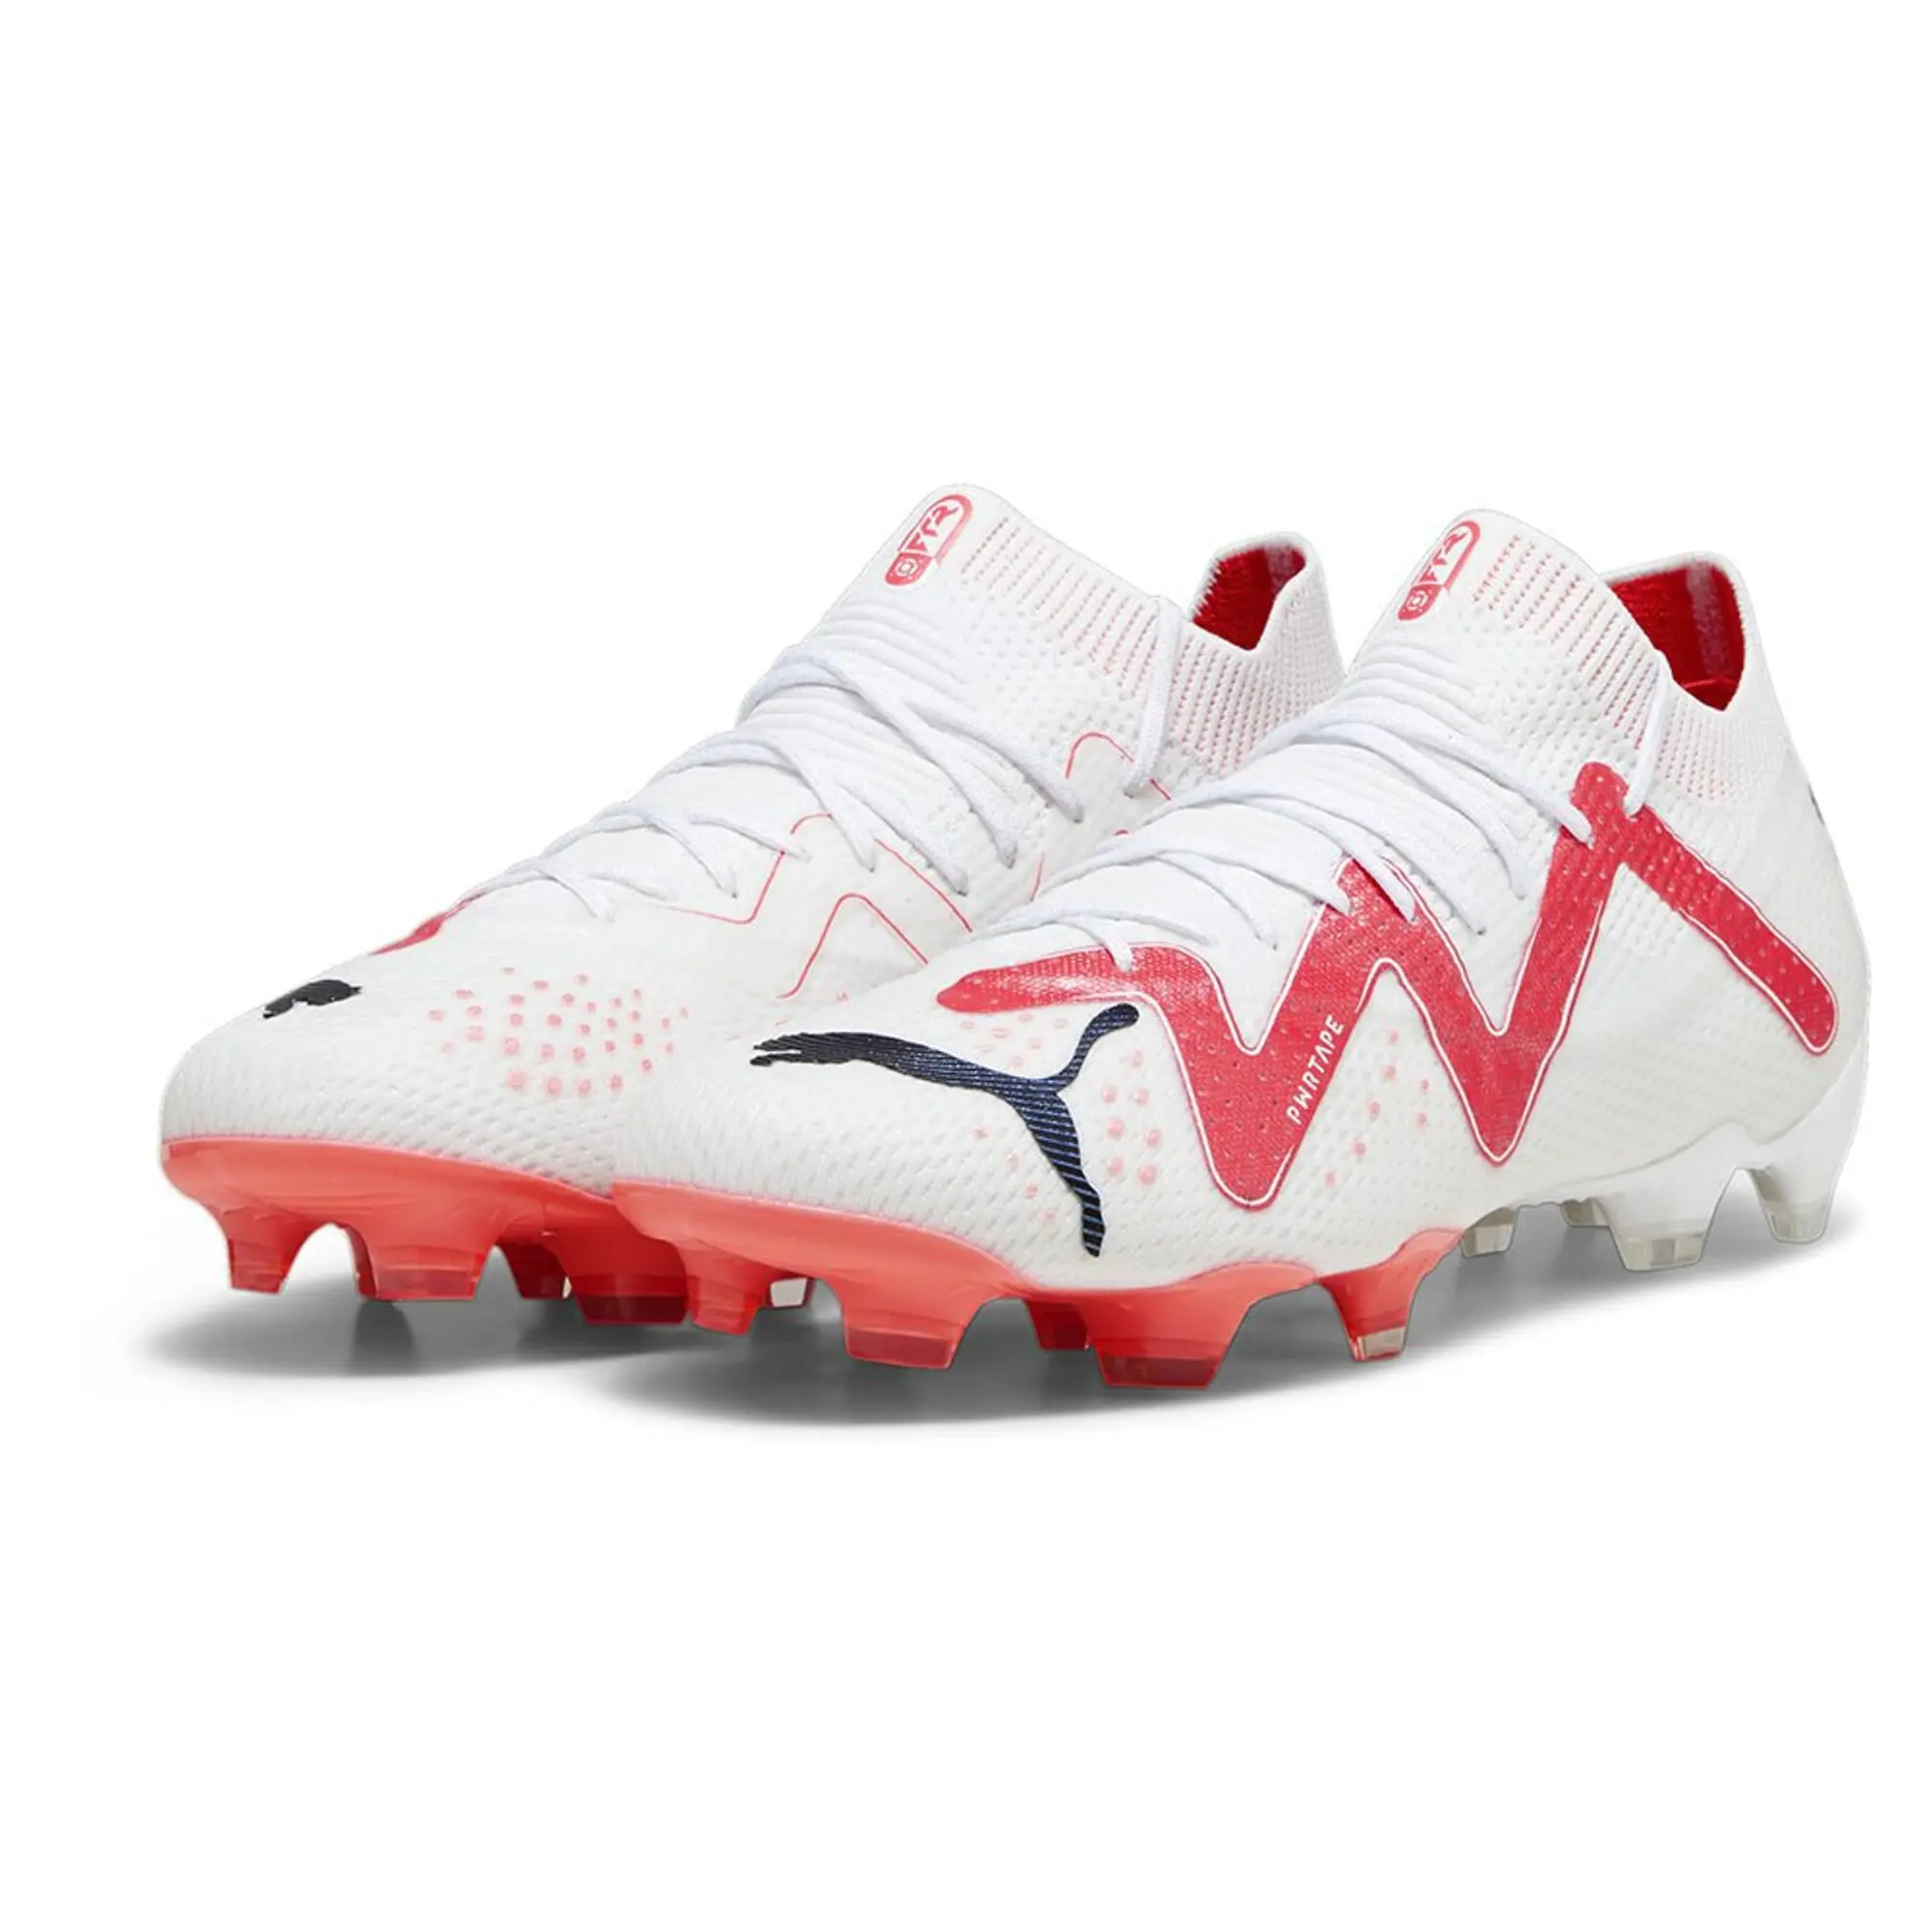 Puma Future Ultimate Fg/ag Football Boots  - White